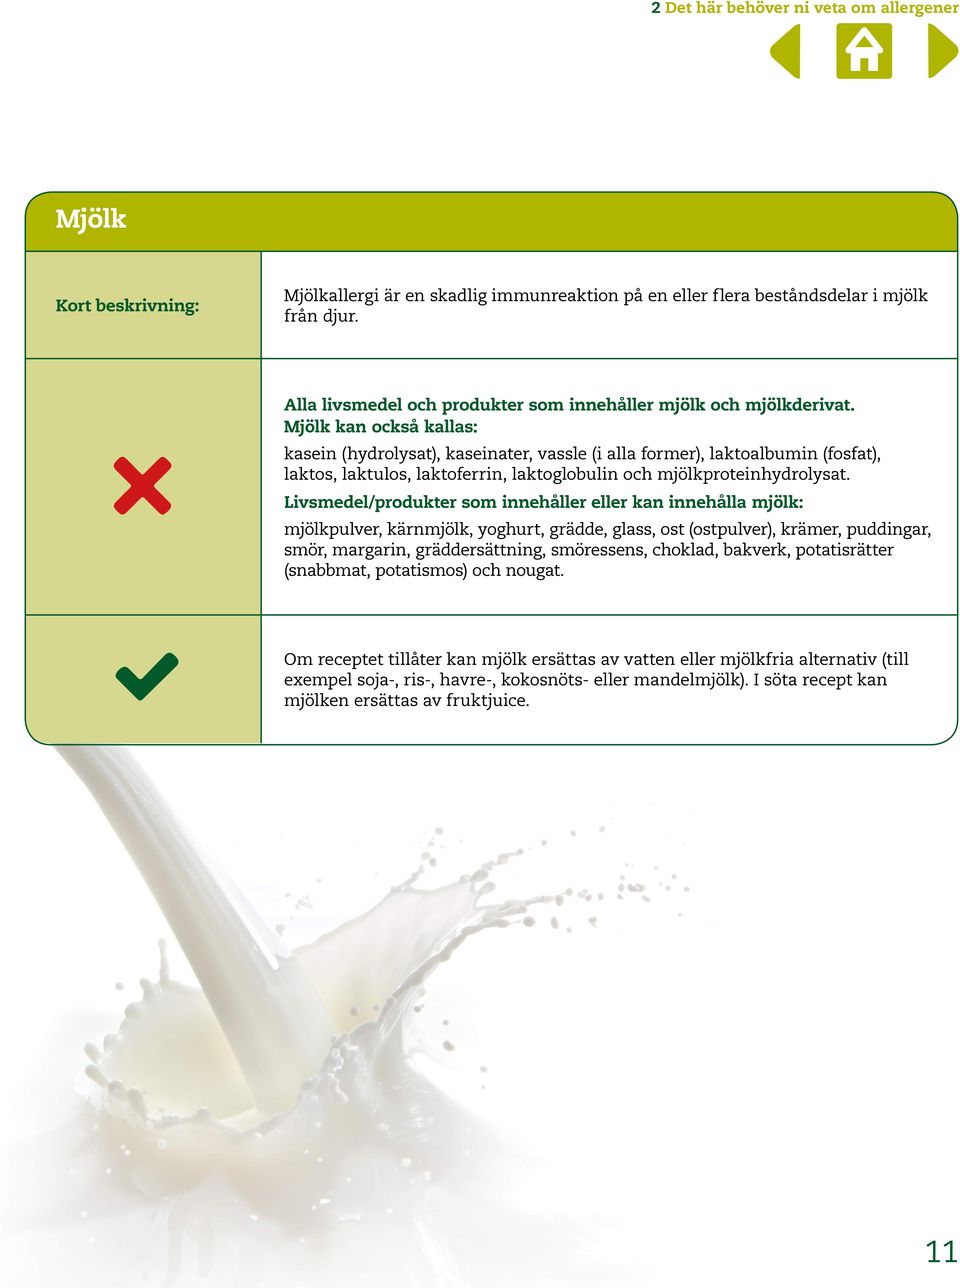 Mjölk kan också kallas: kasein (hydrolysat), kaseinater, vassle (i alla former), laktoalbumin (fosfat), laktos, laktulos, laktoferrin, laktoglobulin och mjölkproteinhydrolysat.